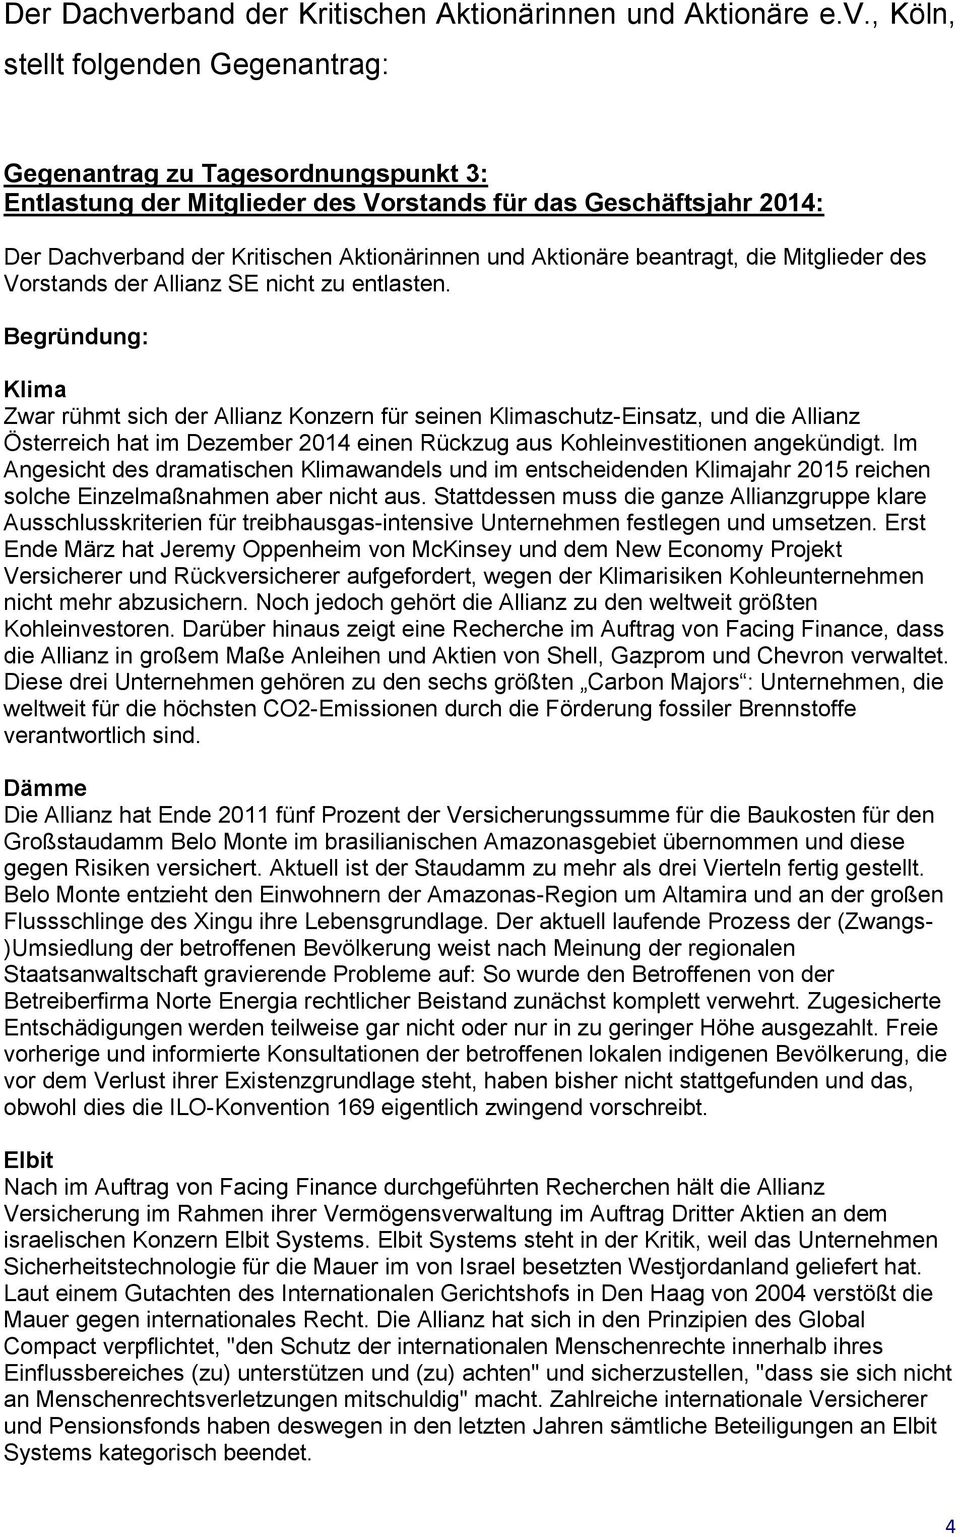 , Köln, stellt folgenden Gegenantrag: Gegenantrag zu Tagesordnungspunkt 3: Entlastung der Mitglieder des Vorstands für das Geschäftsjahr 2014: rband der Kritischen Aktionärinnen und Aktionäre